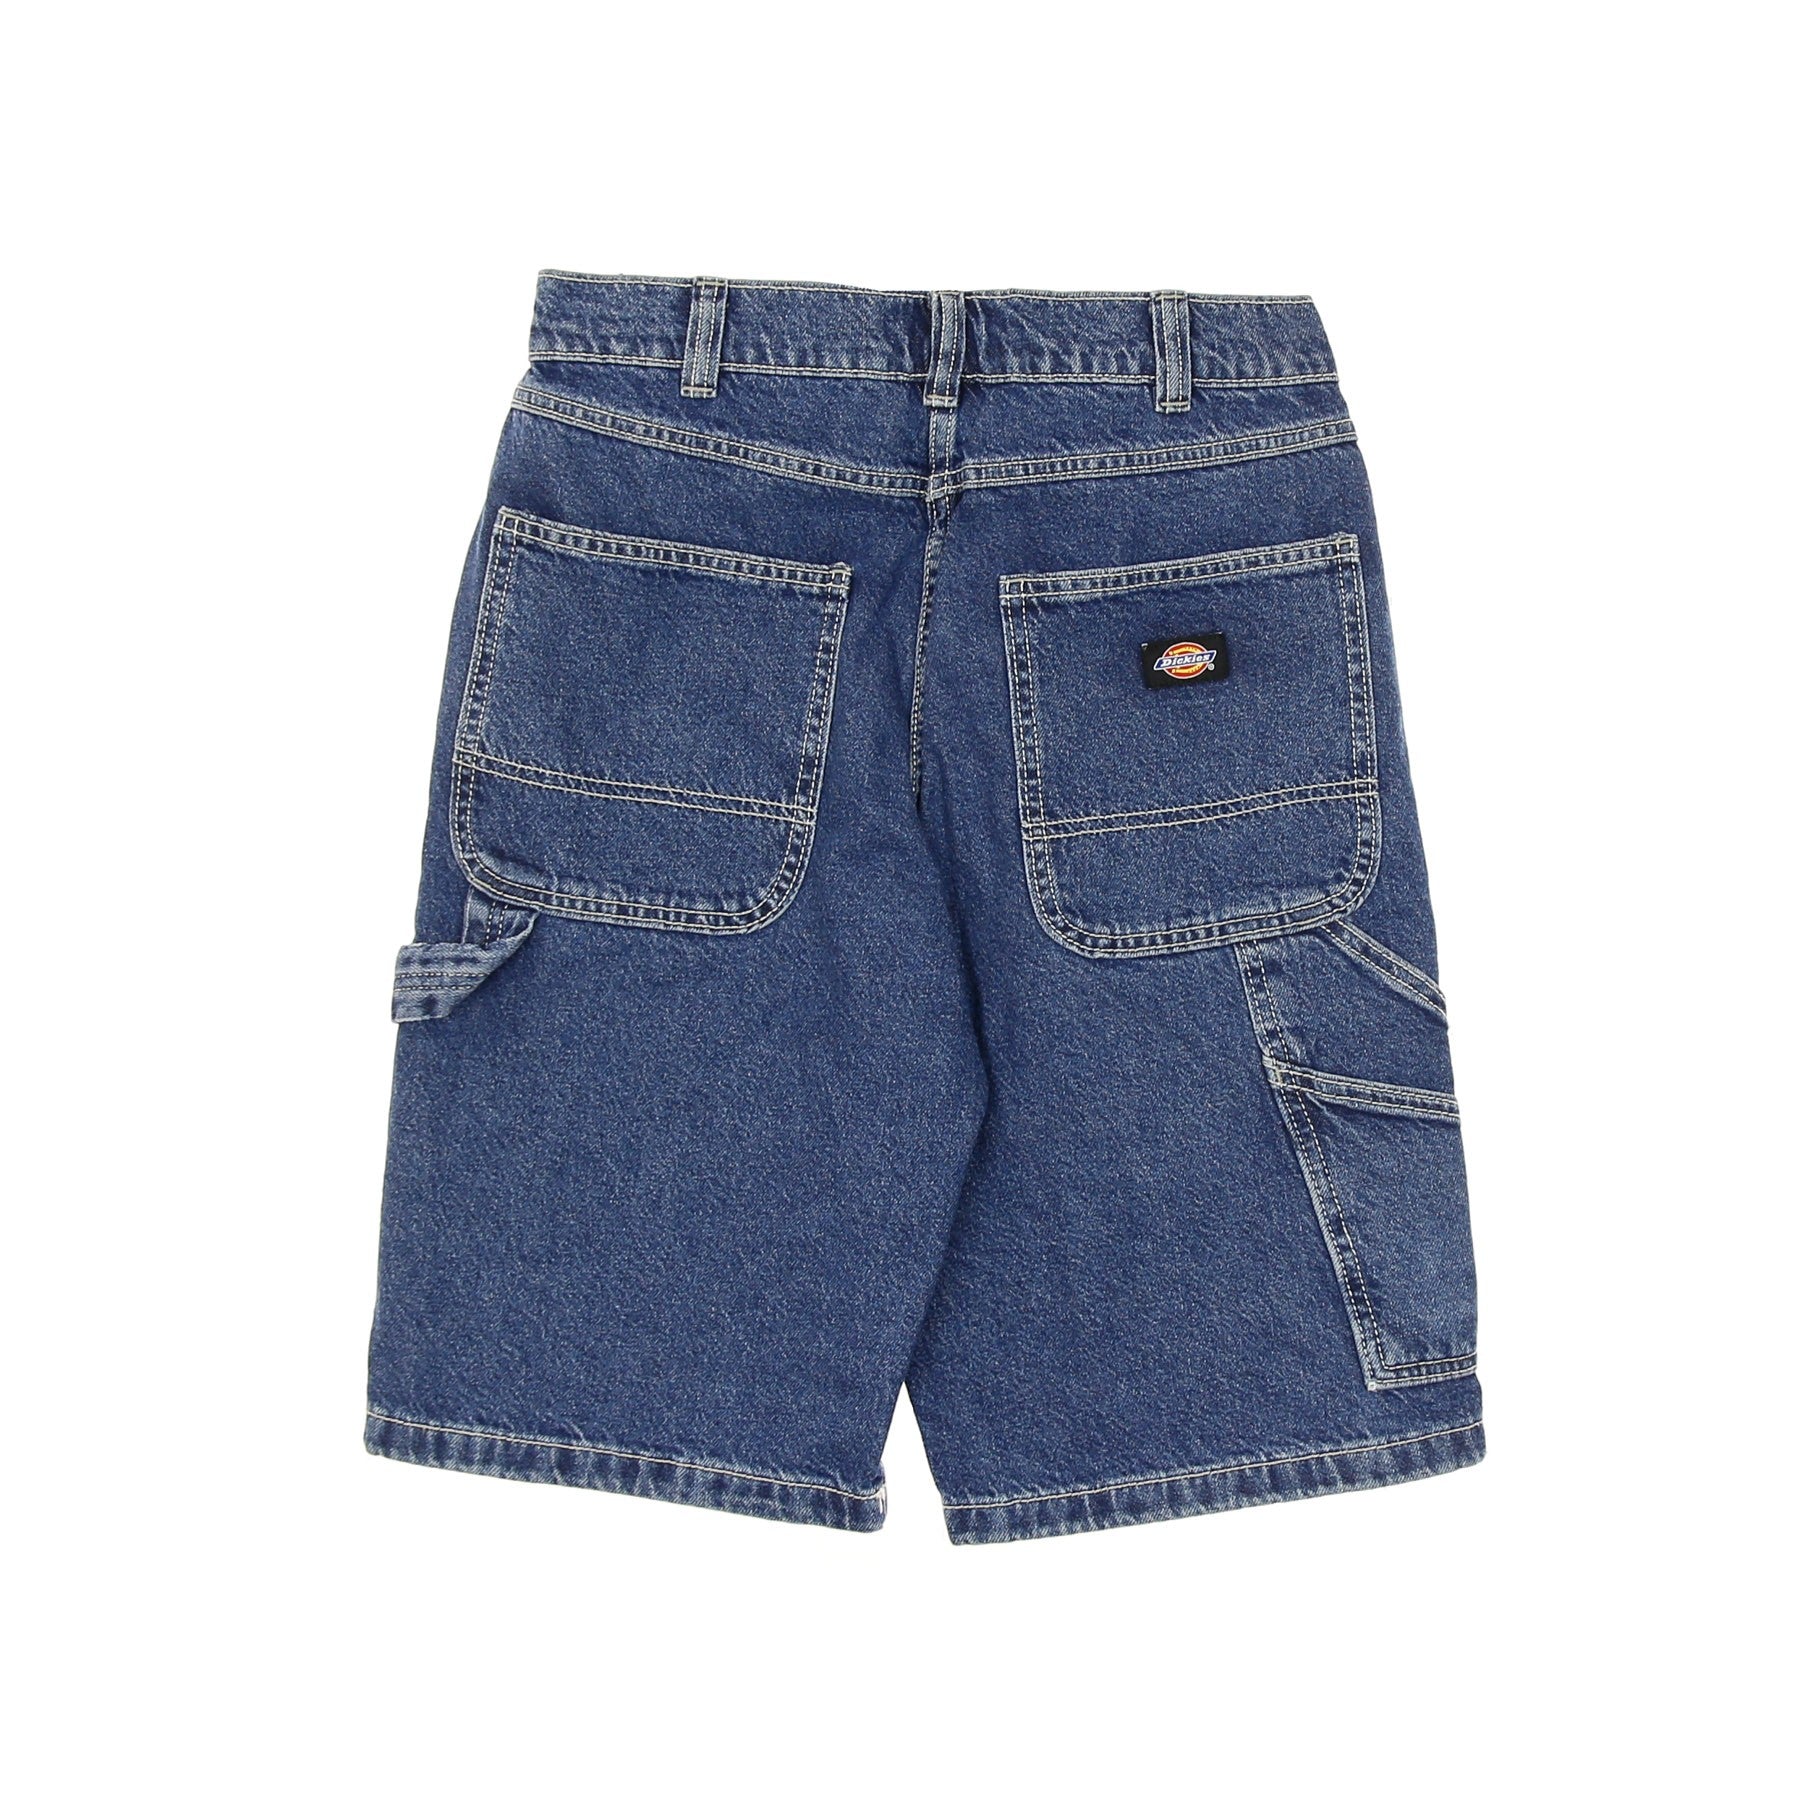 Garyville Short Denim Men's Jeans